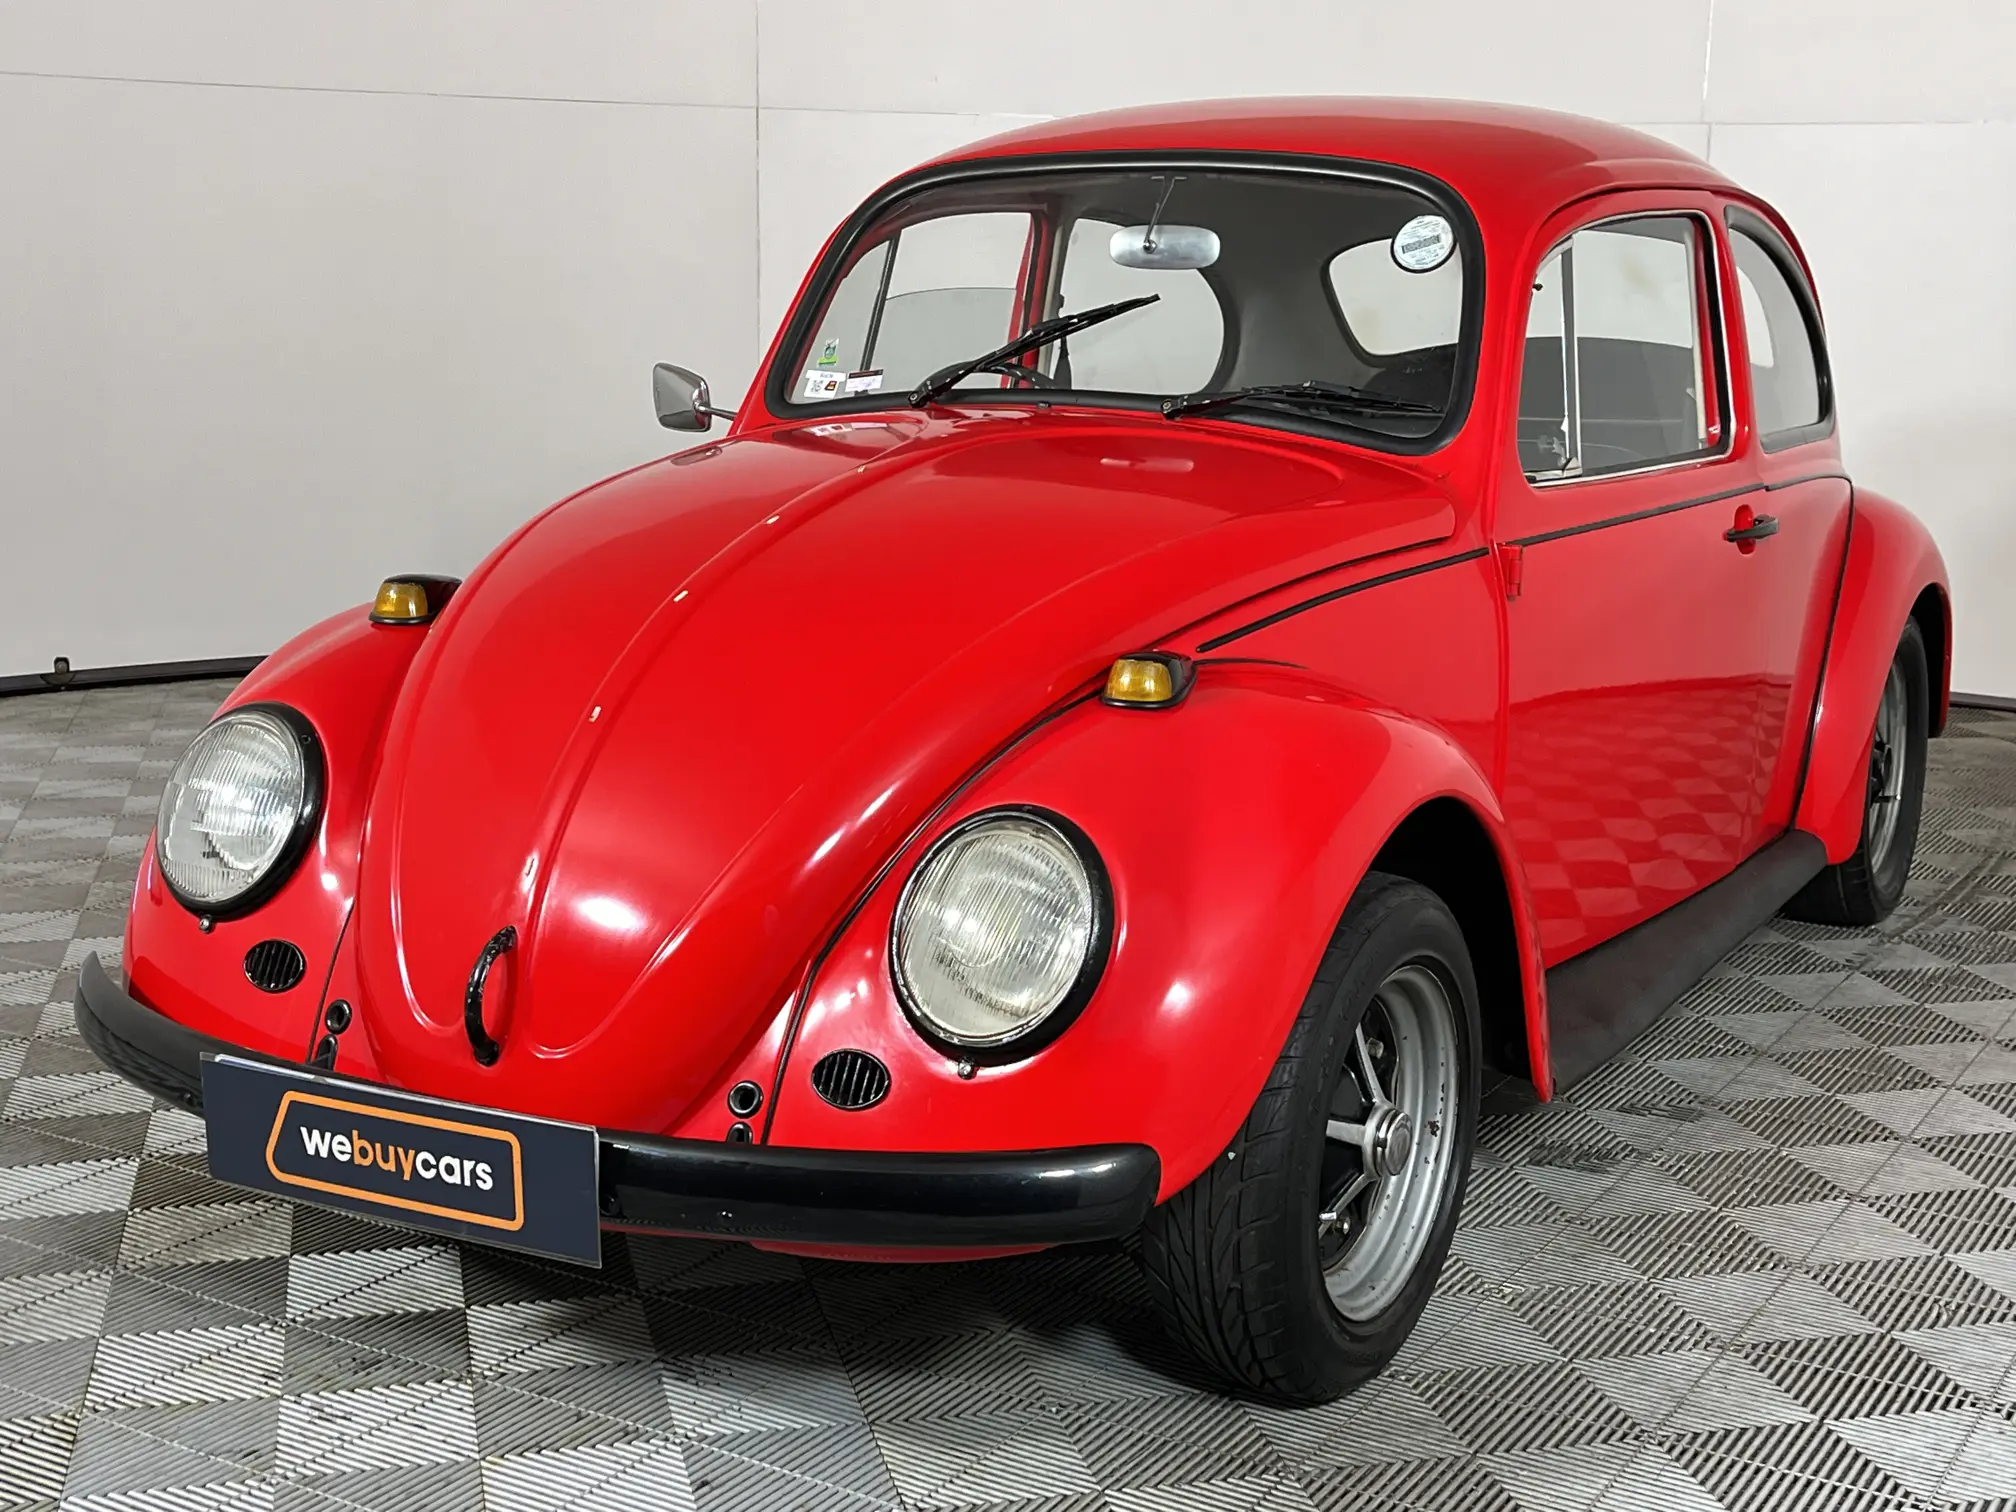 2001 Volkswagen Beetle 1600